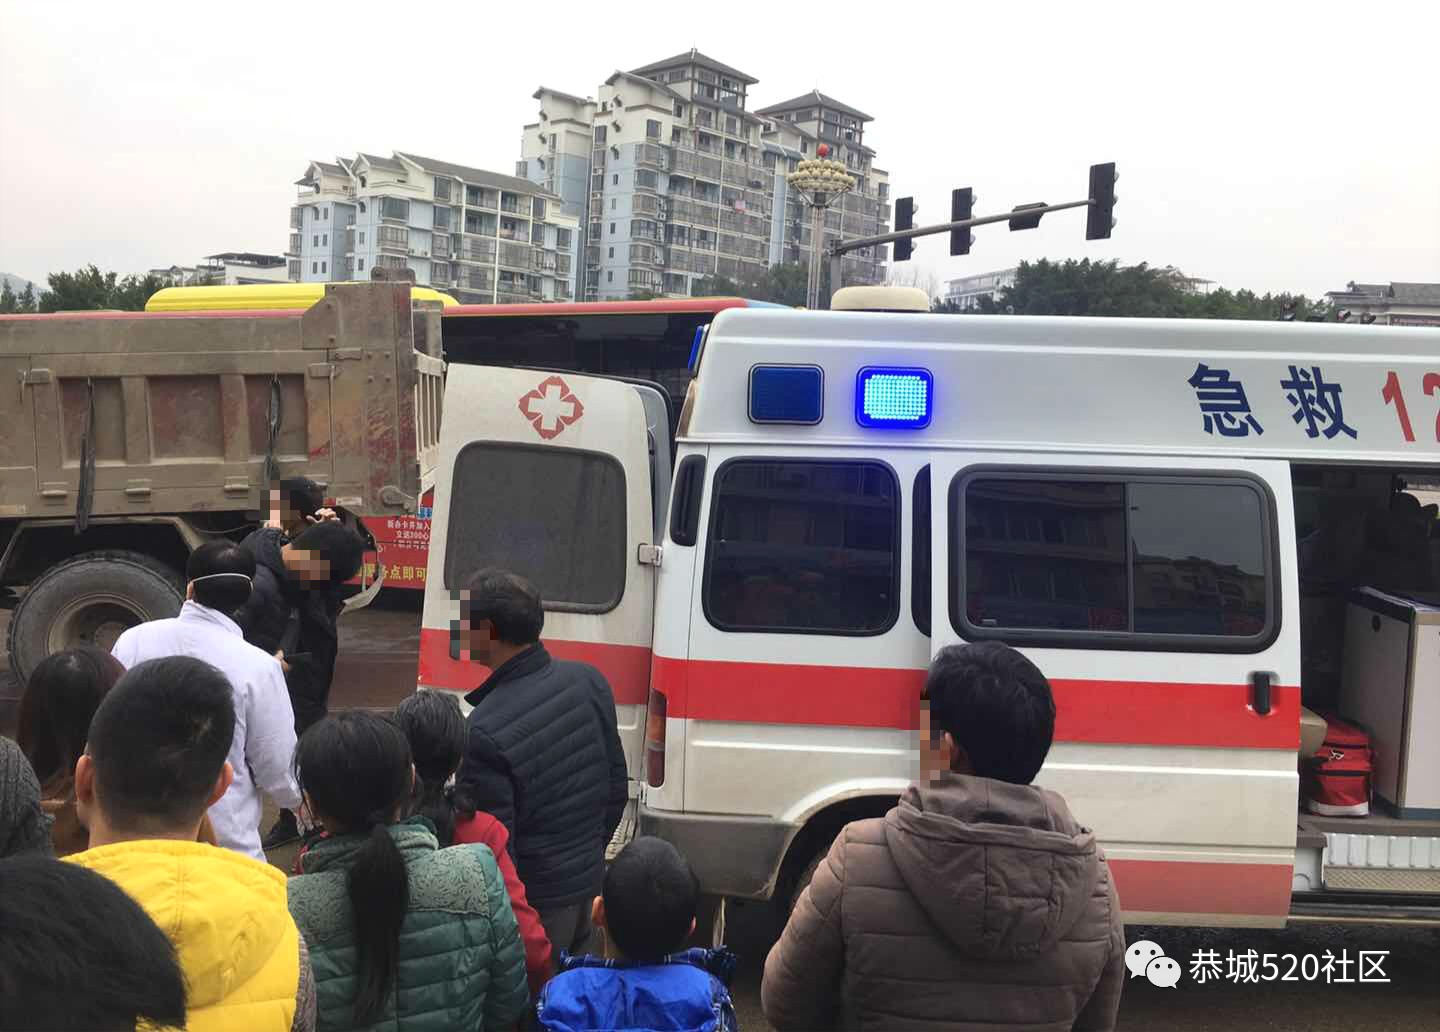 恭城新车站红绿灯处面包车与货车相撞，司机受伤364 / 作者:狗婆蛇 / 帖子ID:267248